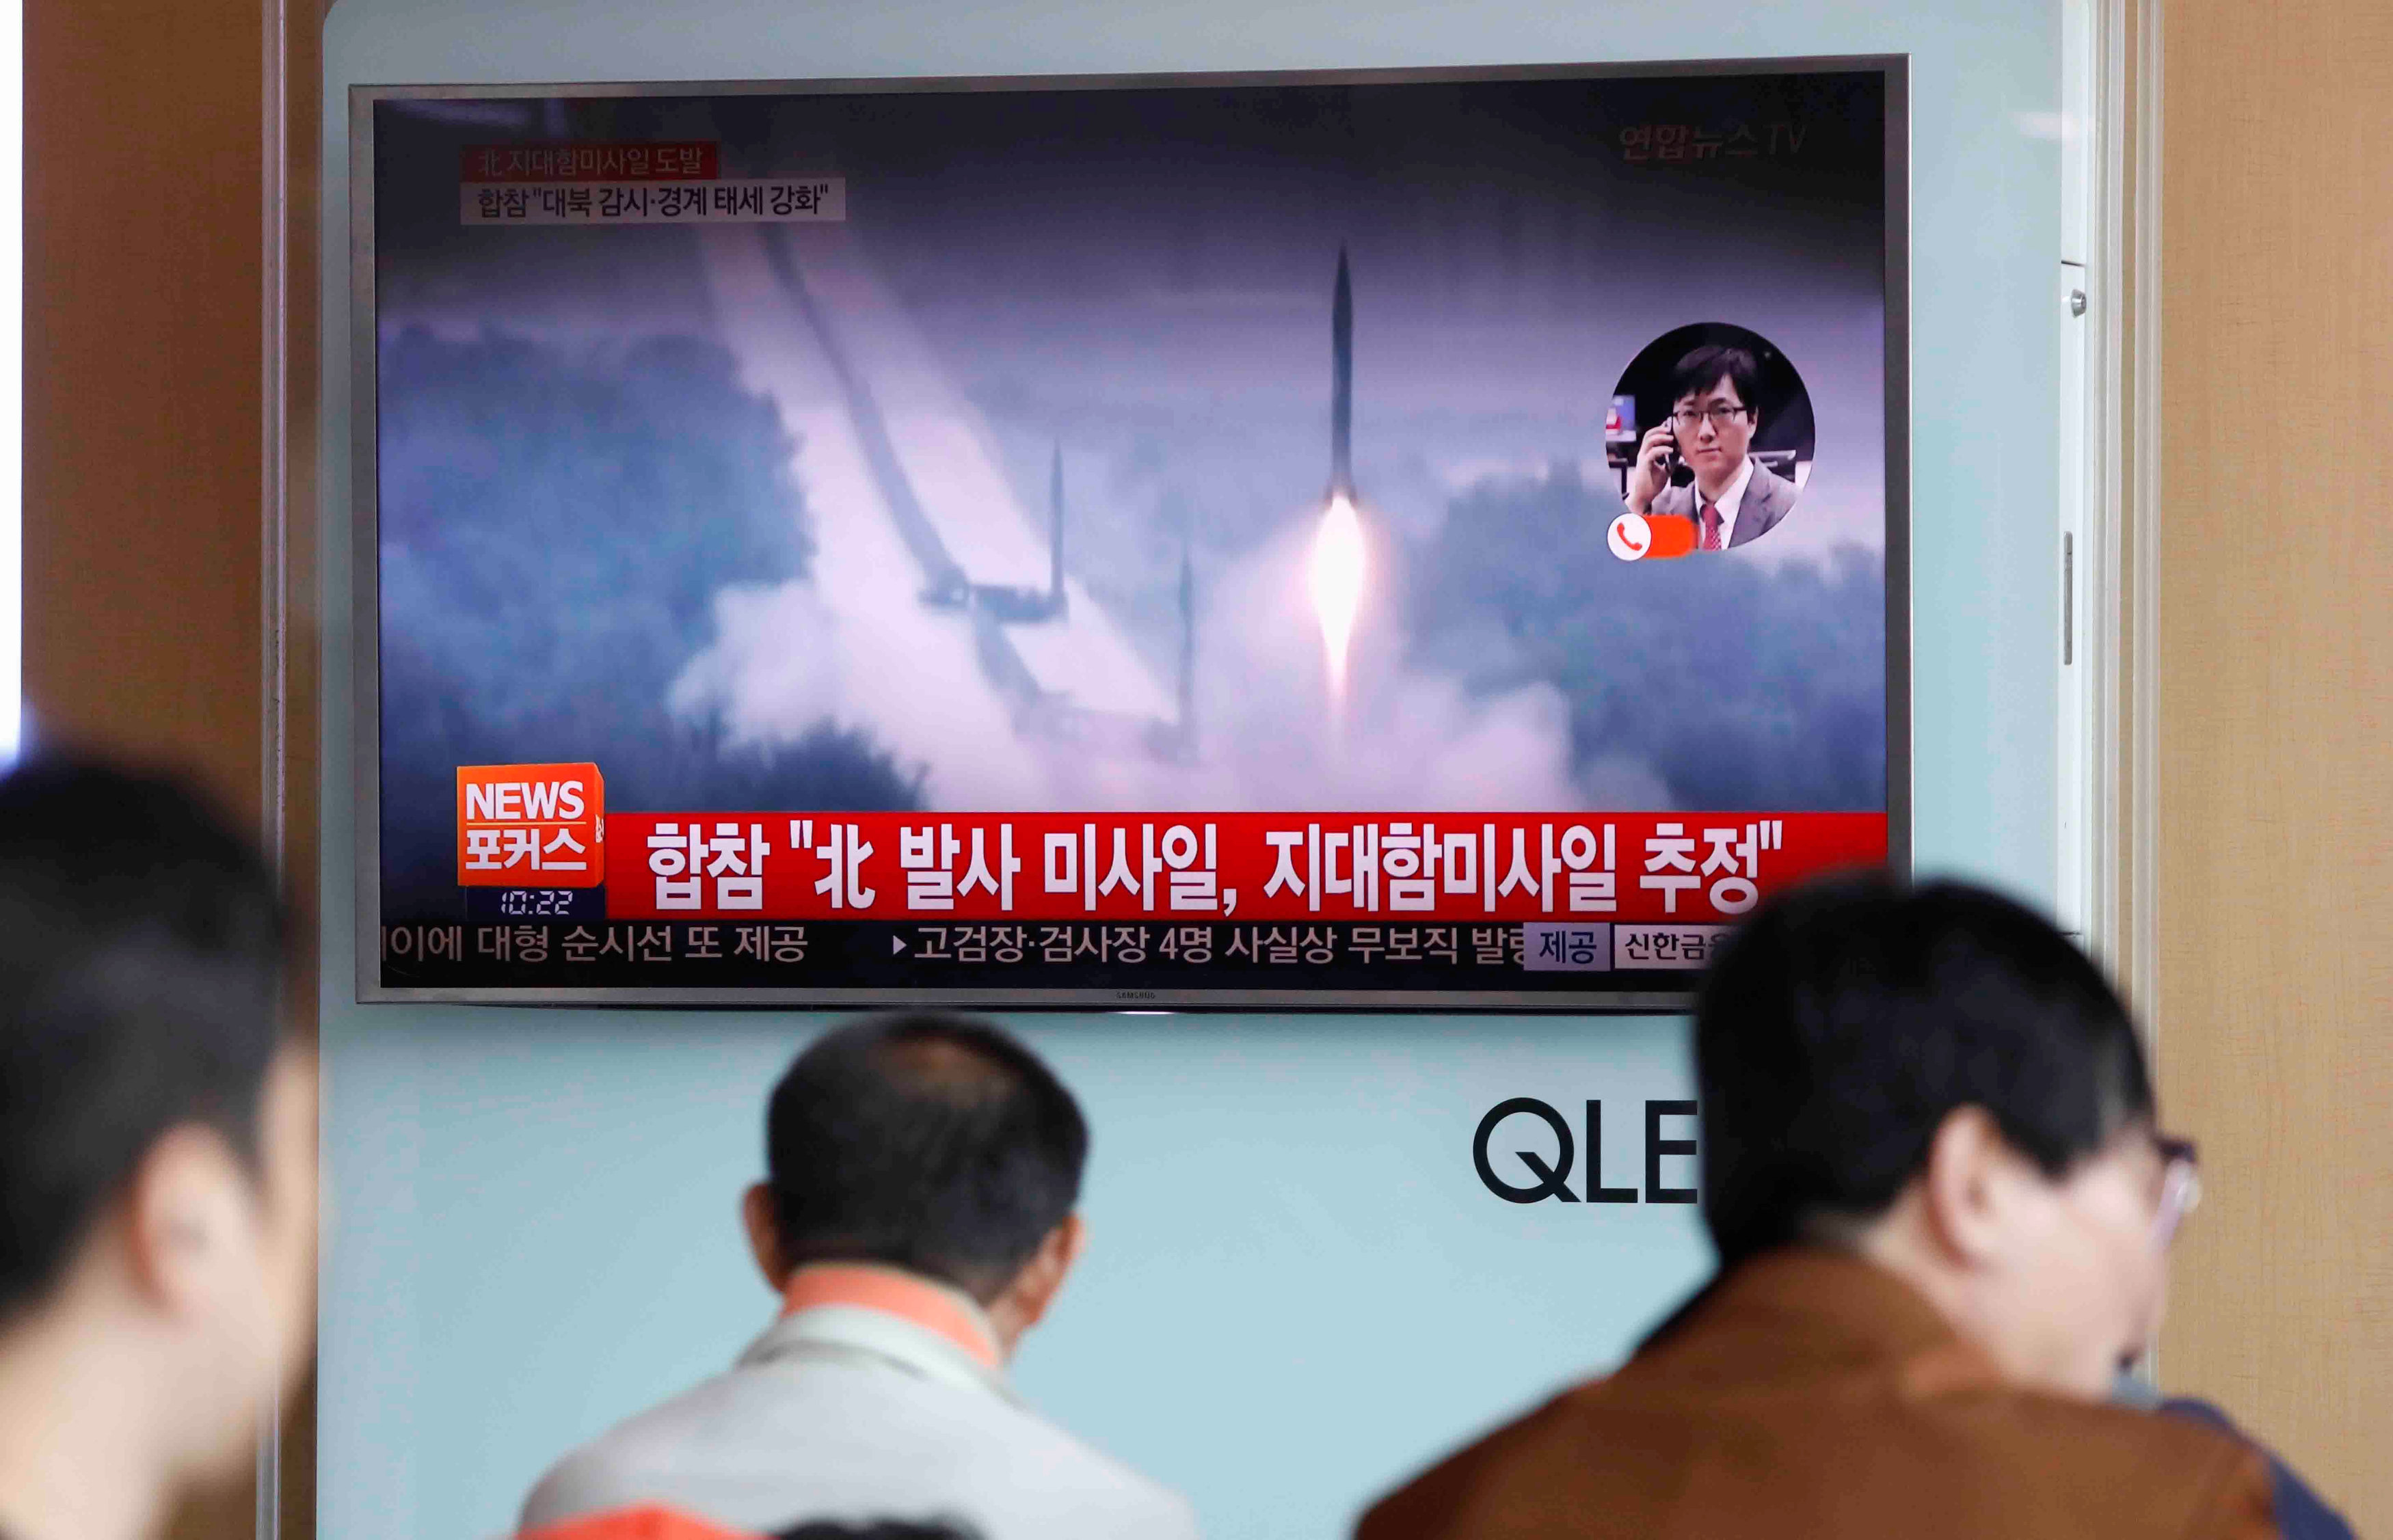 اطلاق عدة صواريخ فى كوريا الشمالية